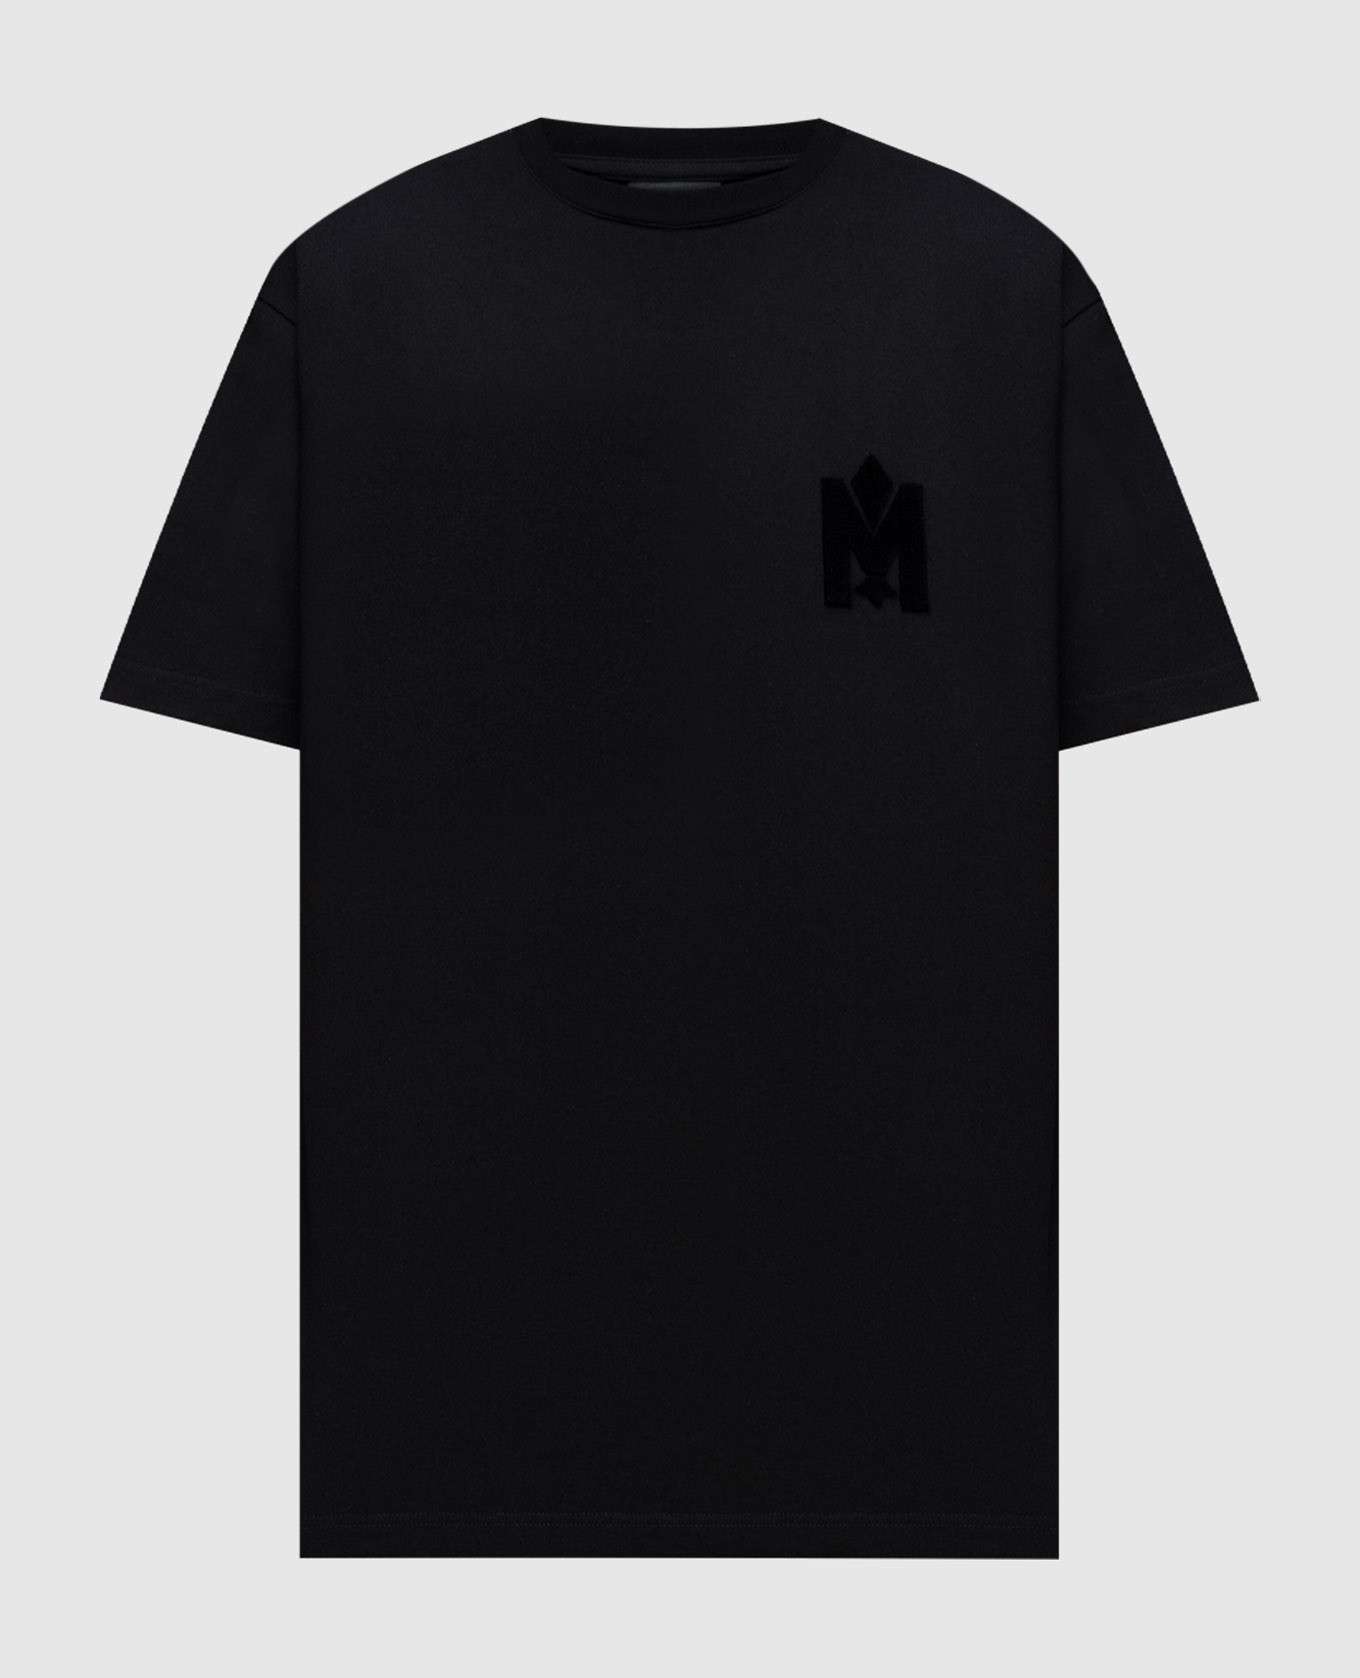 Черная футболка с фактурной эмблемой логотипа